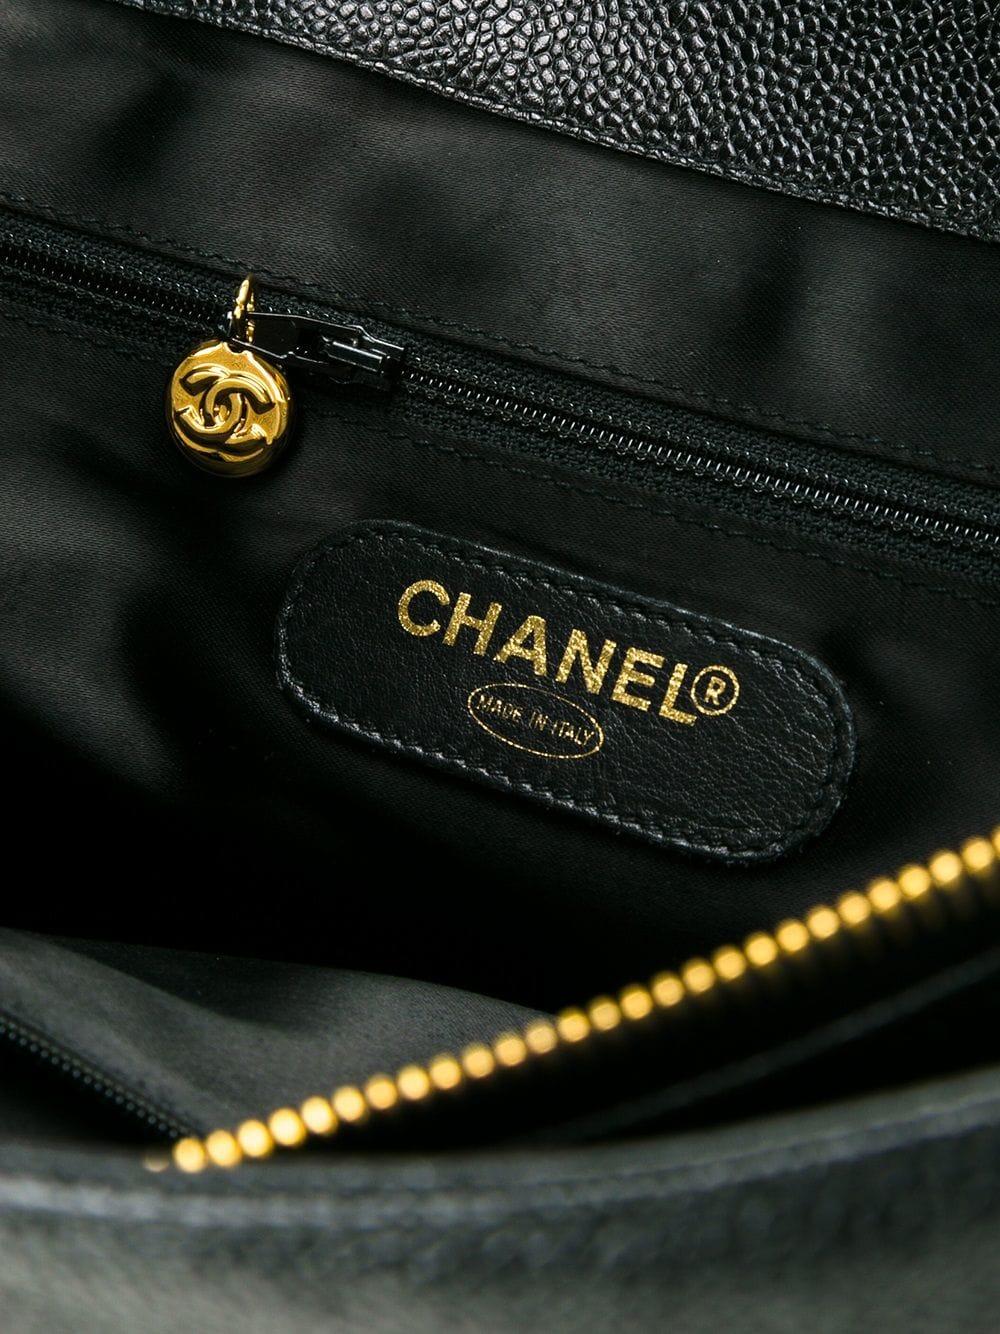 Chanel Black Caviar Leather Large Overnight Weekender Travel Tote Shoulder Bag 2